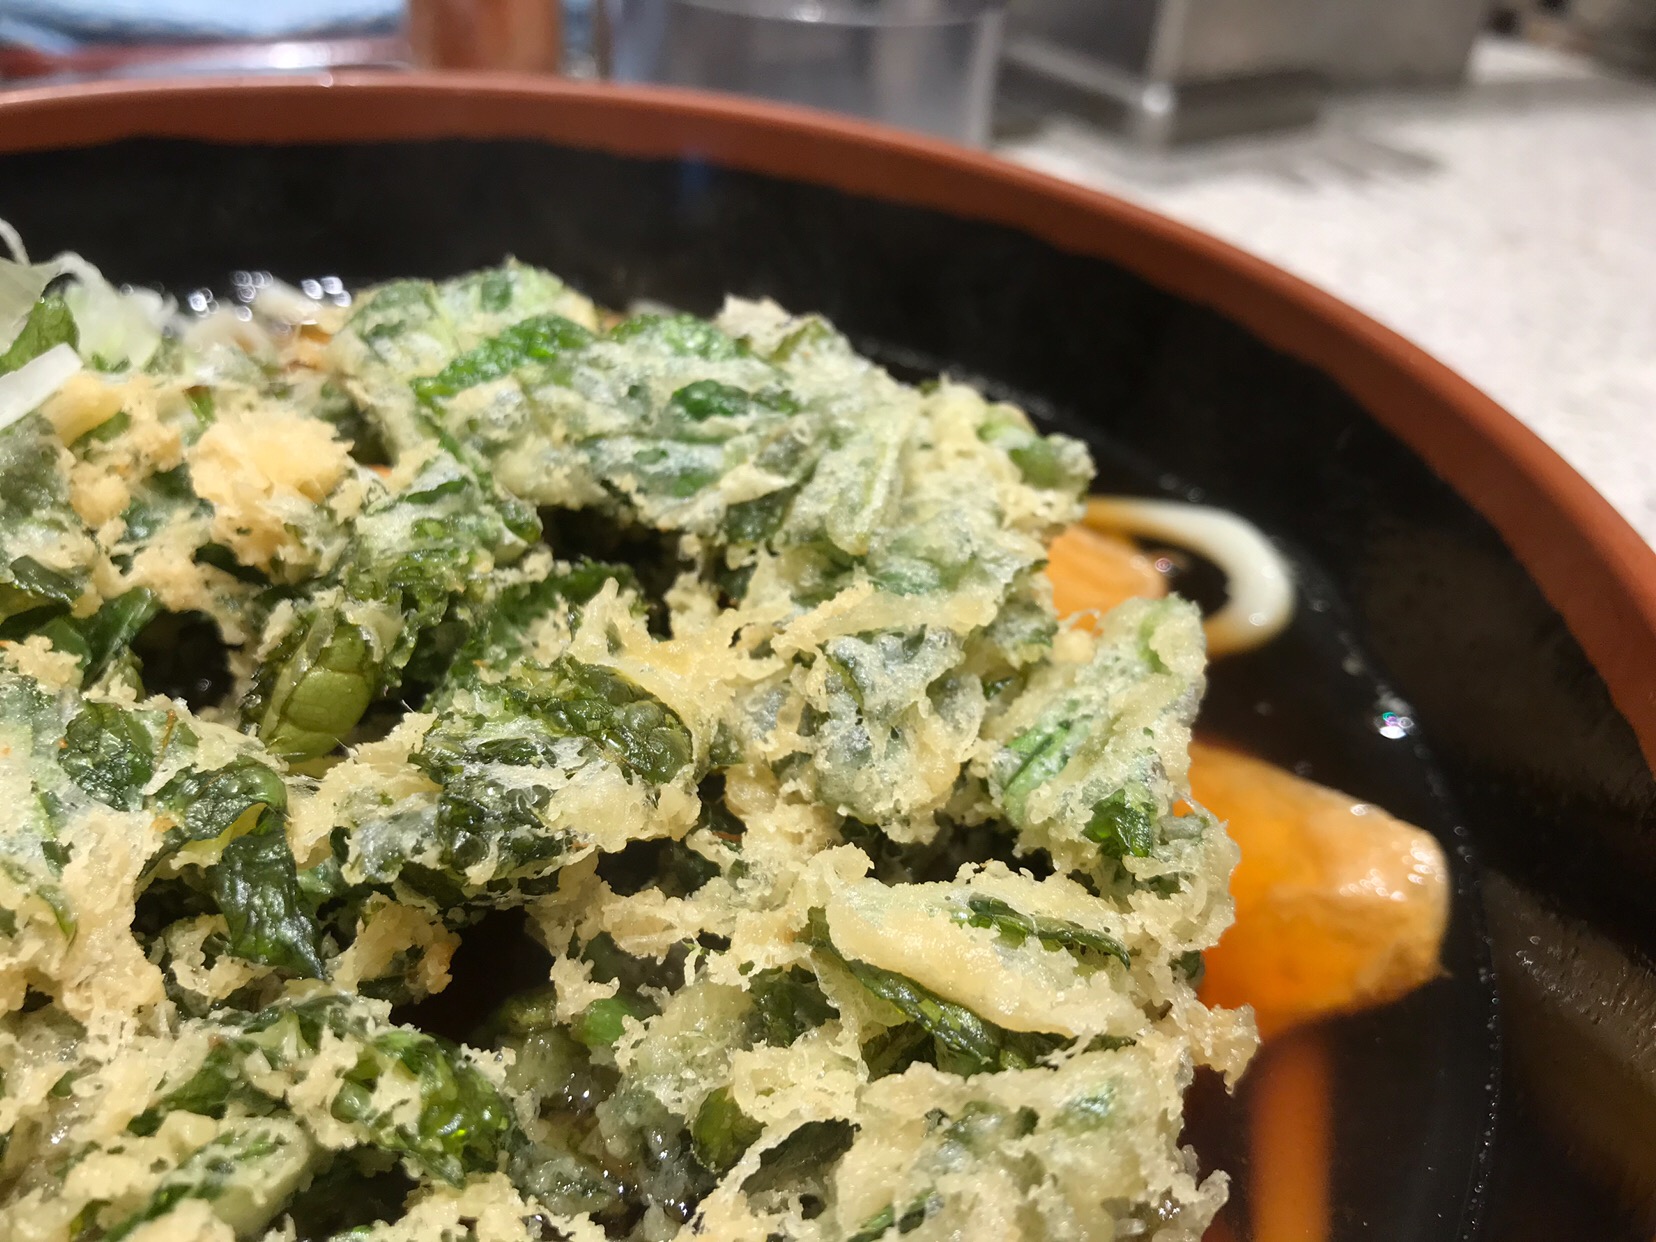 東京 新宿で明日葉 あしたば の天ぷらを食べて元気になる 呼吸器内科医 中田潤子のブログ